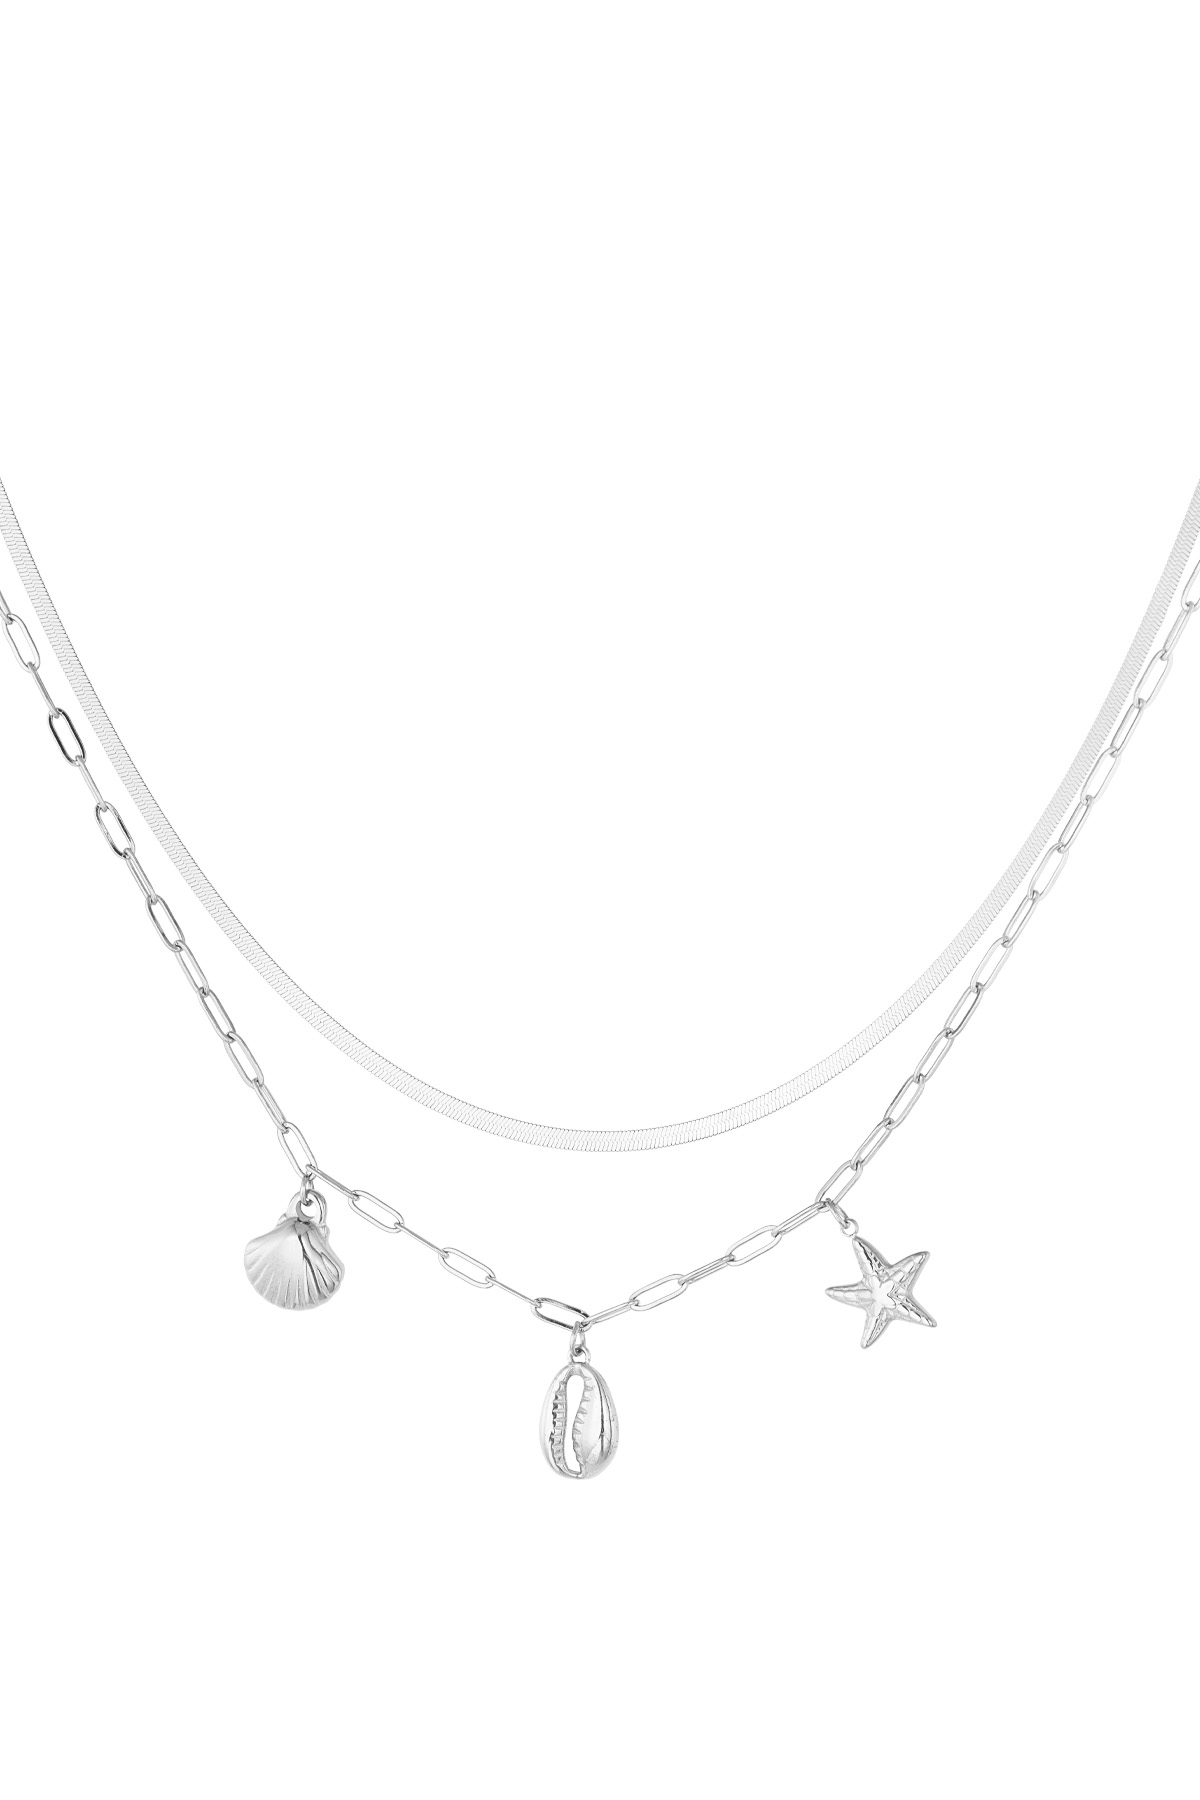 Halskette mit Meeresseite-Anhänger – Silber